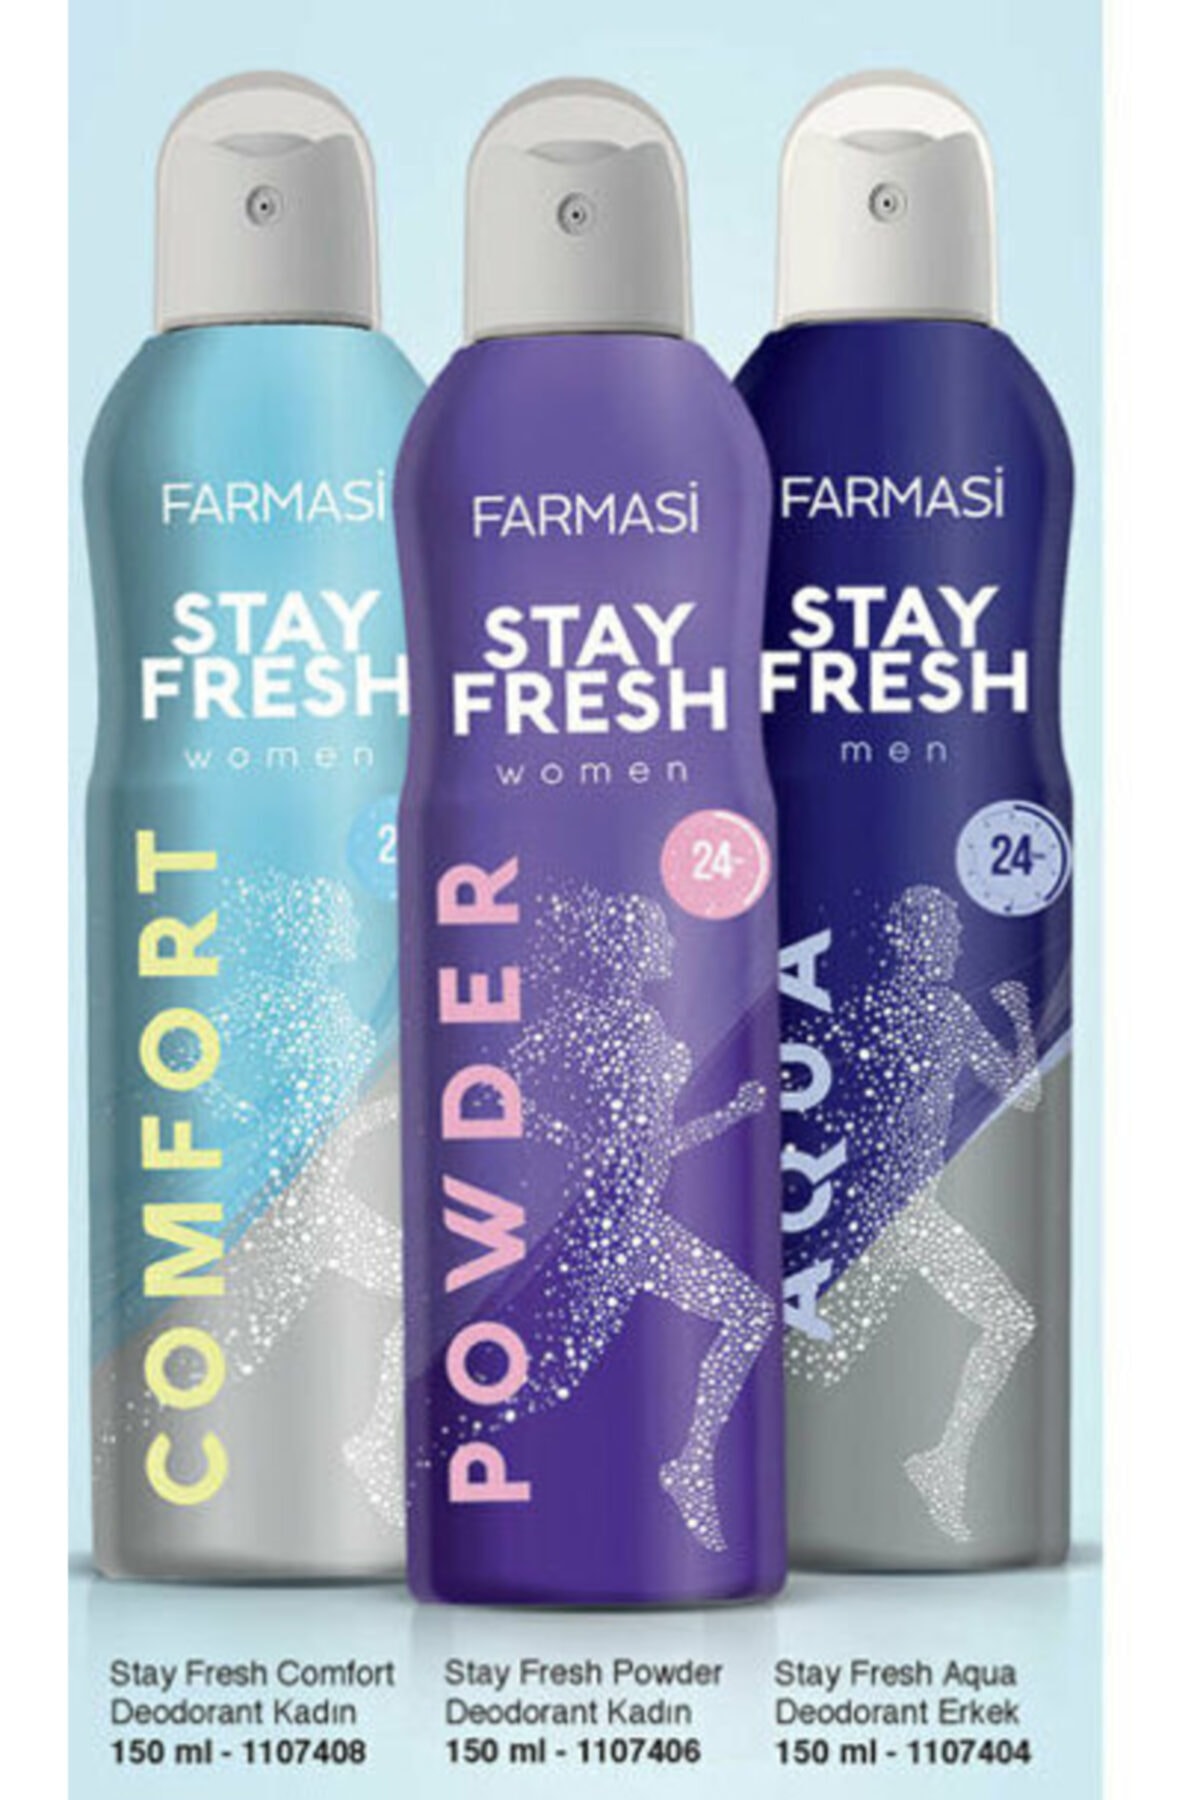 Farmasi Stay Fresh Comfort Kadın-powder Kadın- Aqua Erkek Deodorant 150ml